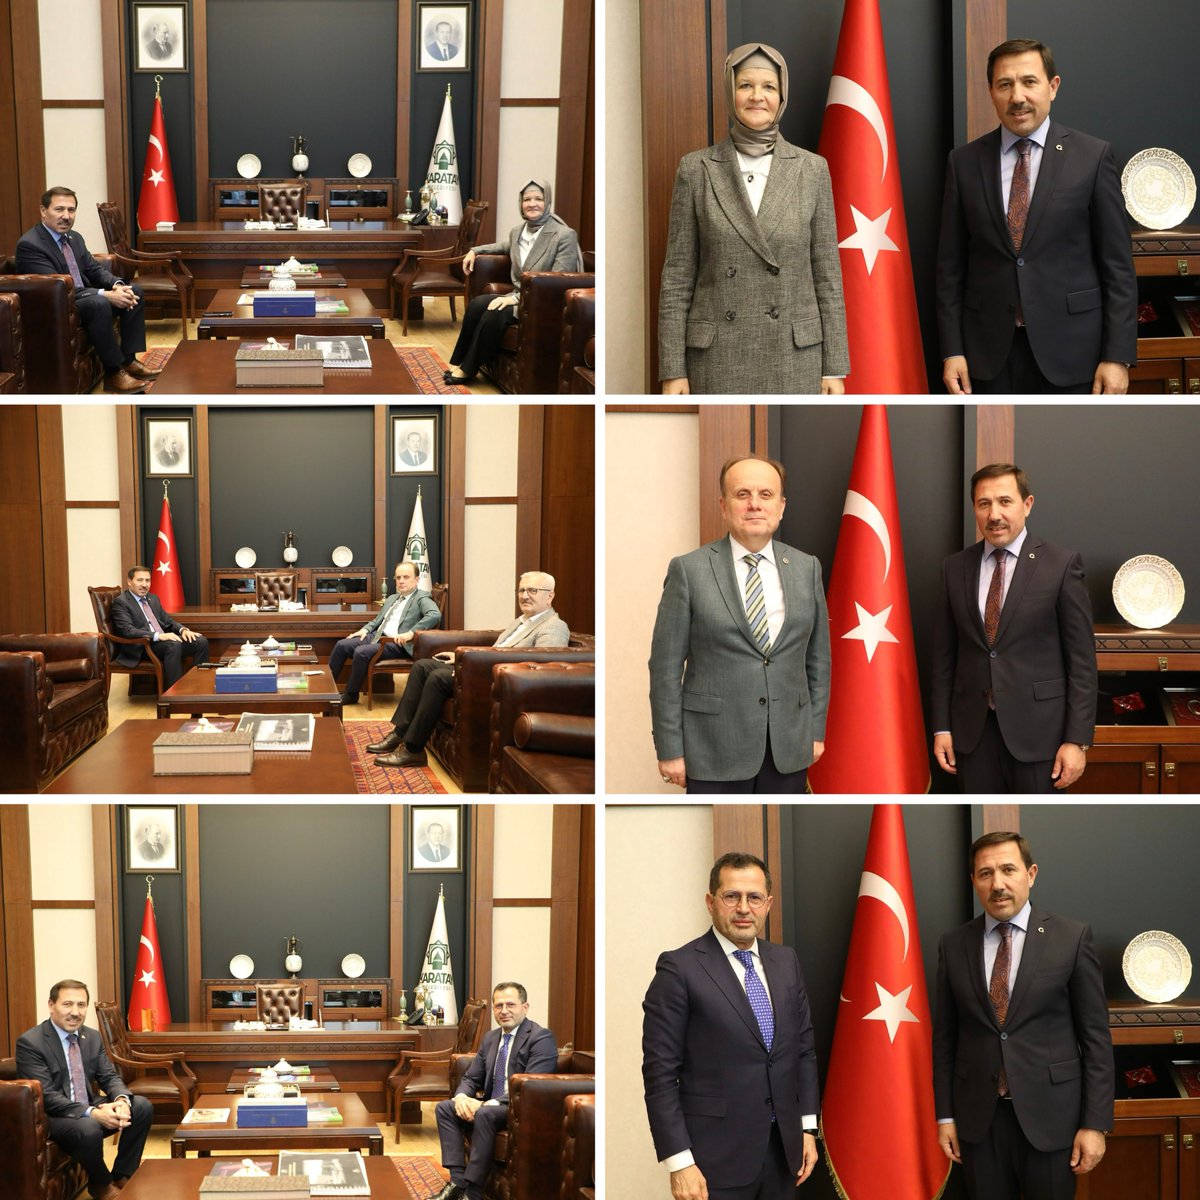 AK Parti Konya Milletvekillerimiz Meryem Göka, Ziya Altunyaldız ve Mehmet Baykan’ı belediyemizde ağırladık. Değerli milletvekillerimize nazik ziyaretleri, çalışmalarımıza gösterdikleri ilgi ve destekleri dolayısıyla teşekkürlerimi iletiyorum. @meryemgoka @ZiyaAltunyaldiz…